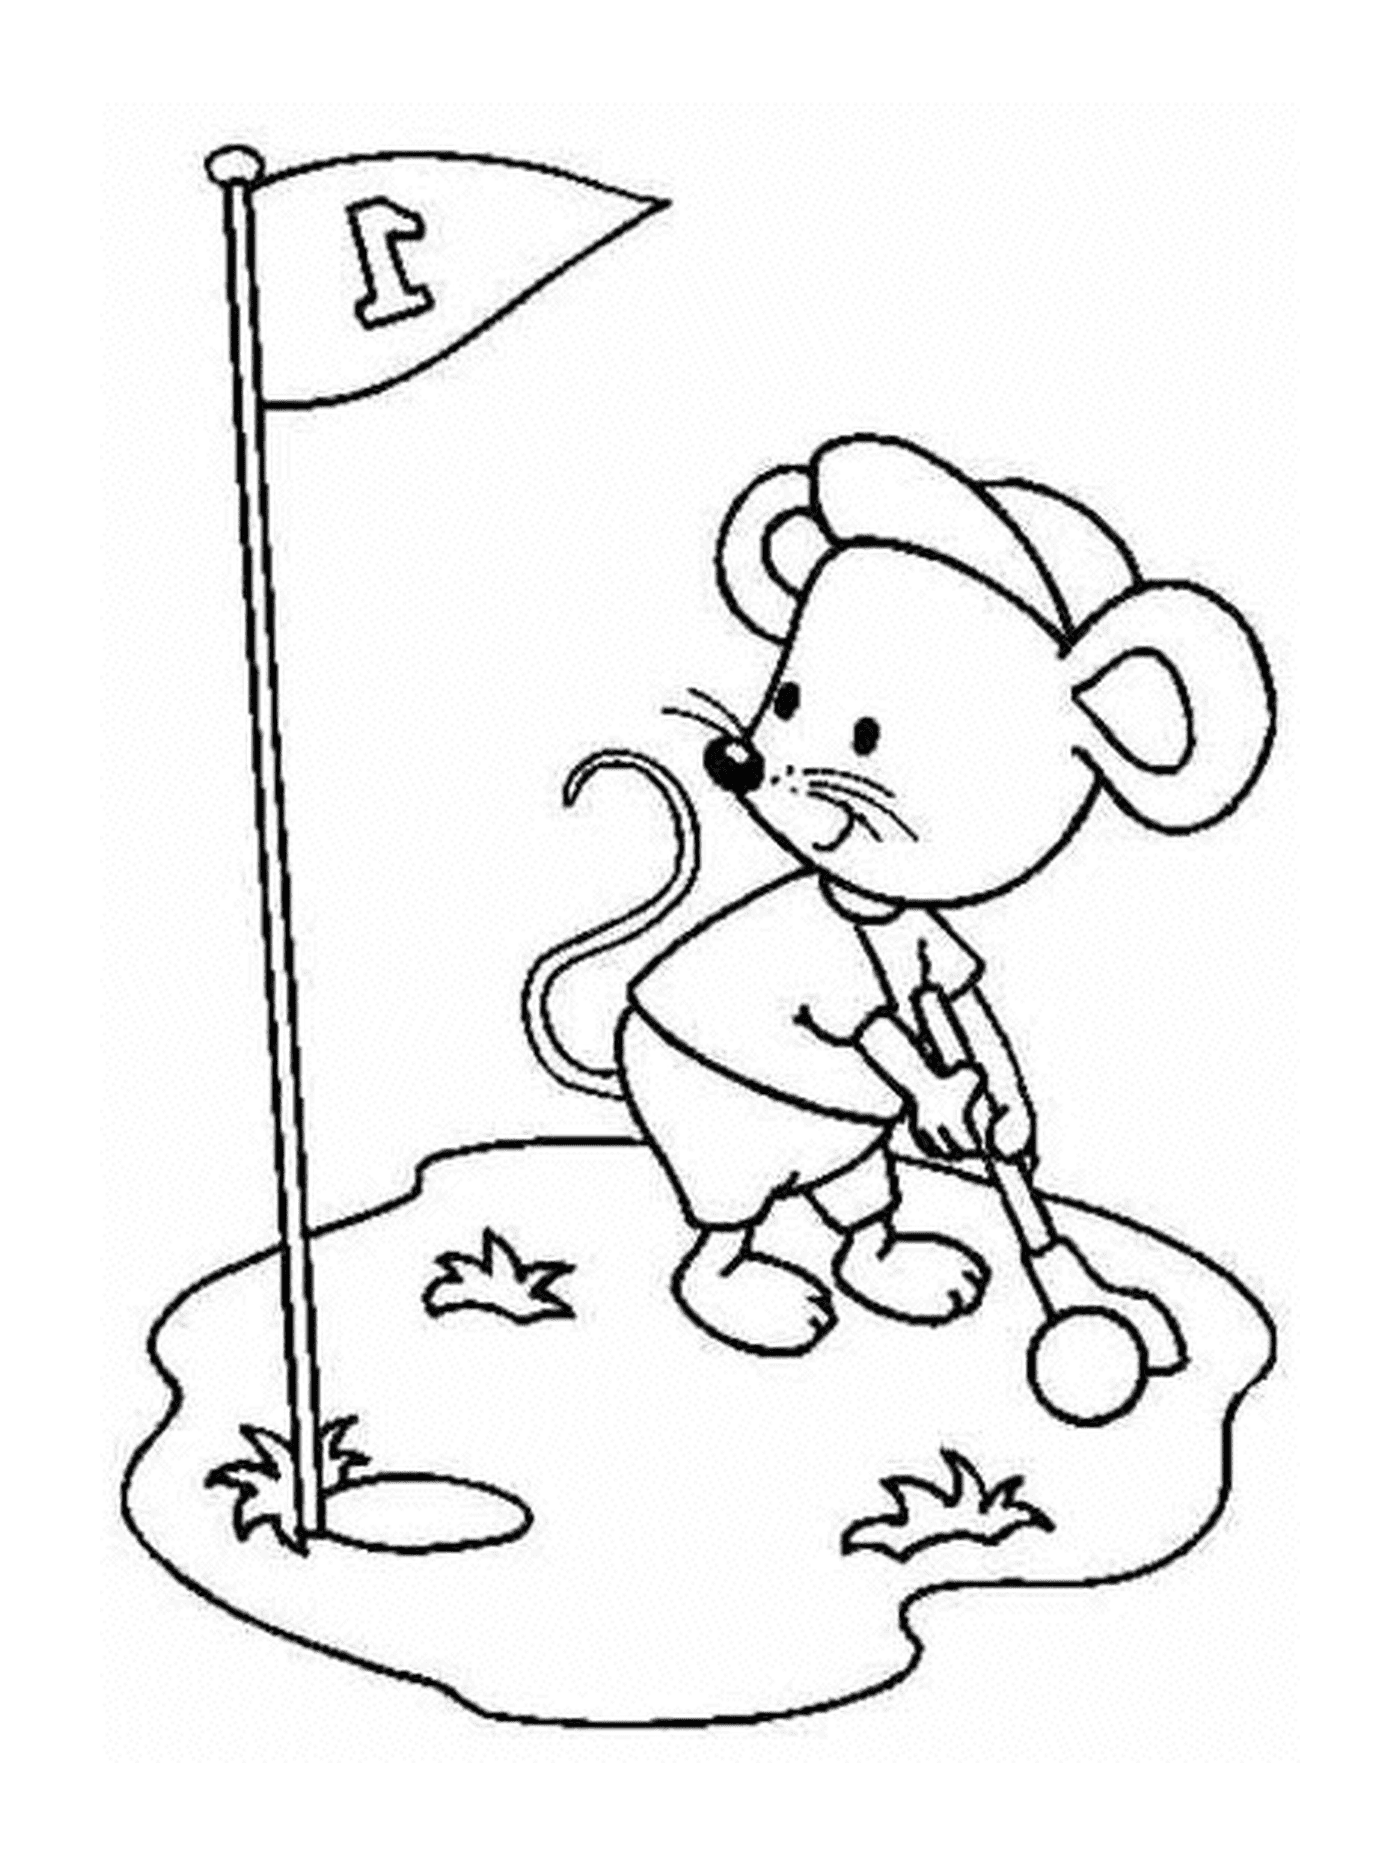  Un ratón jugando al golf 